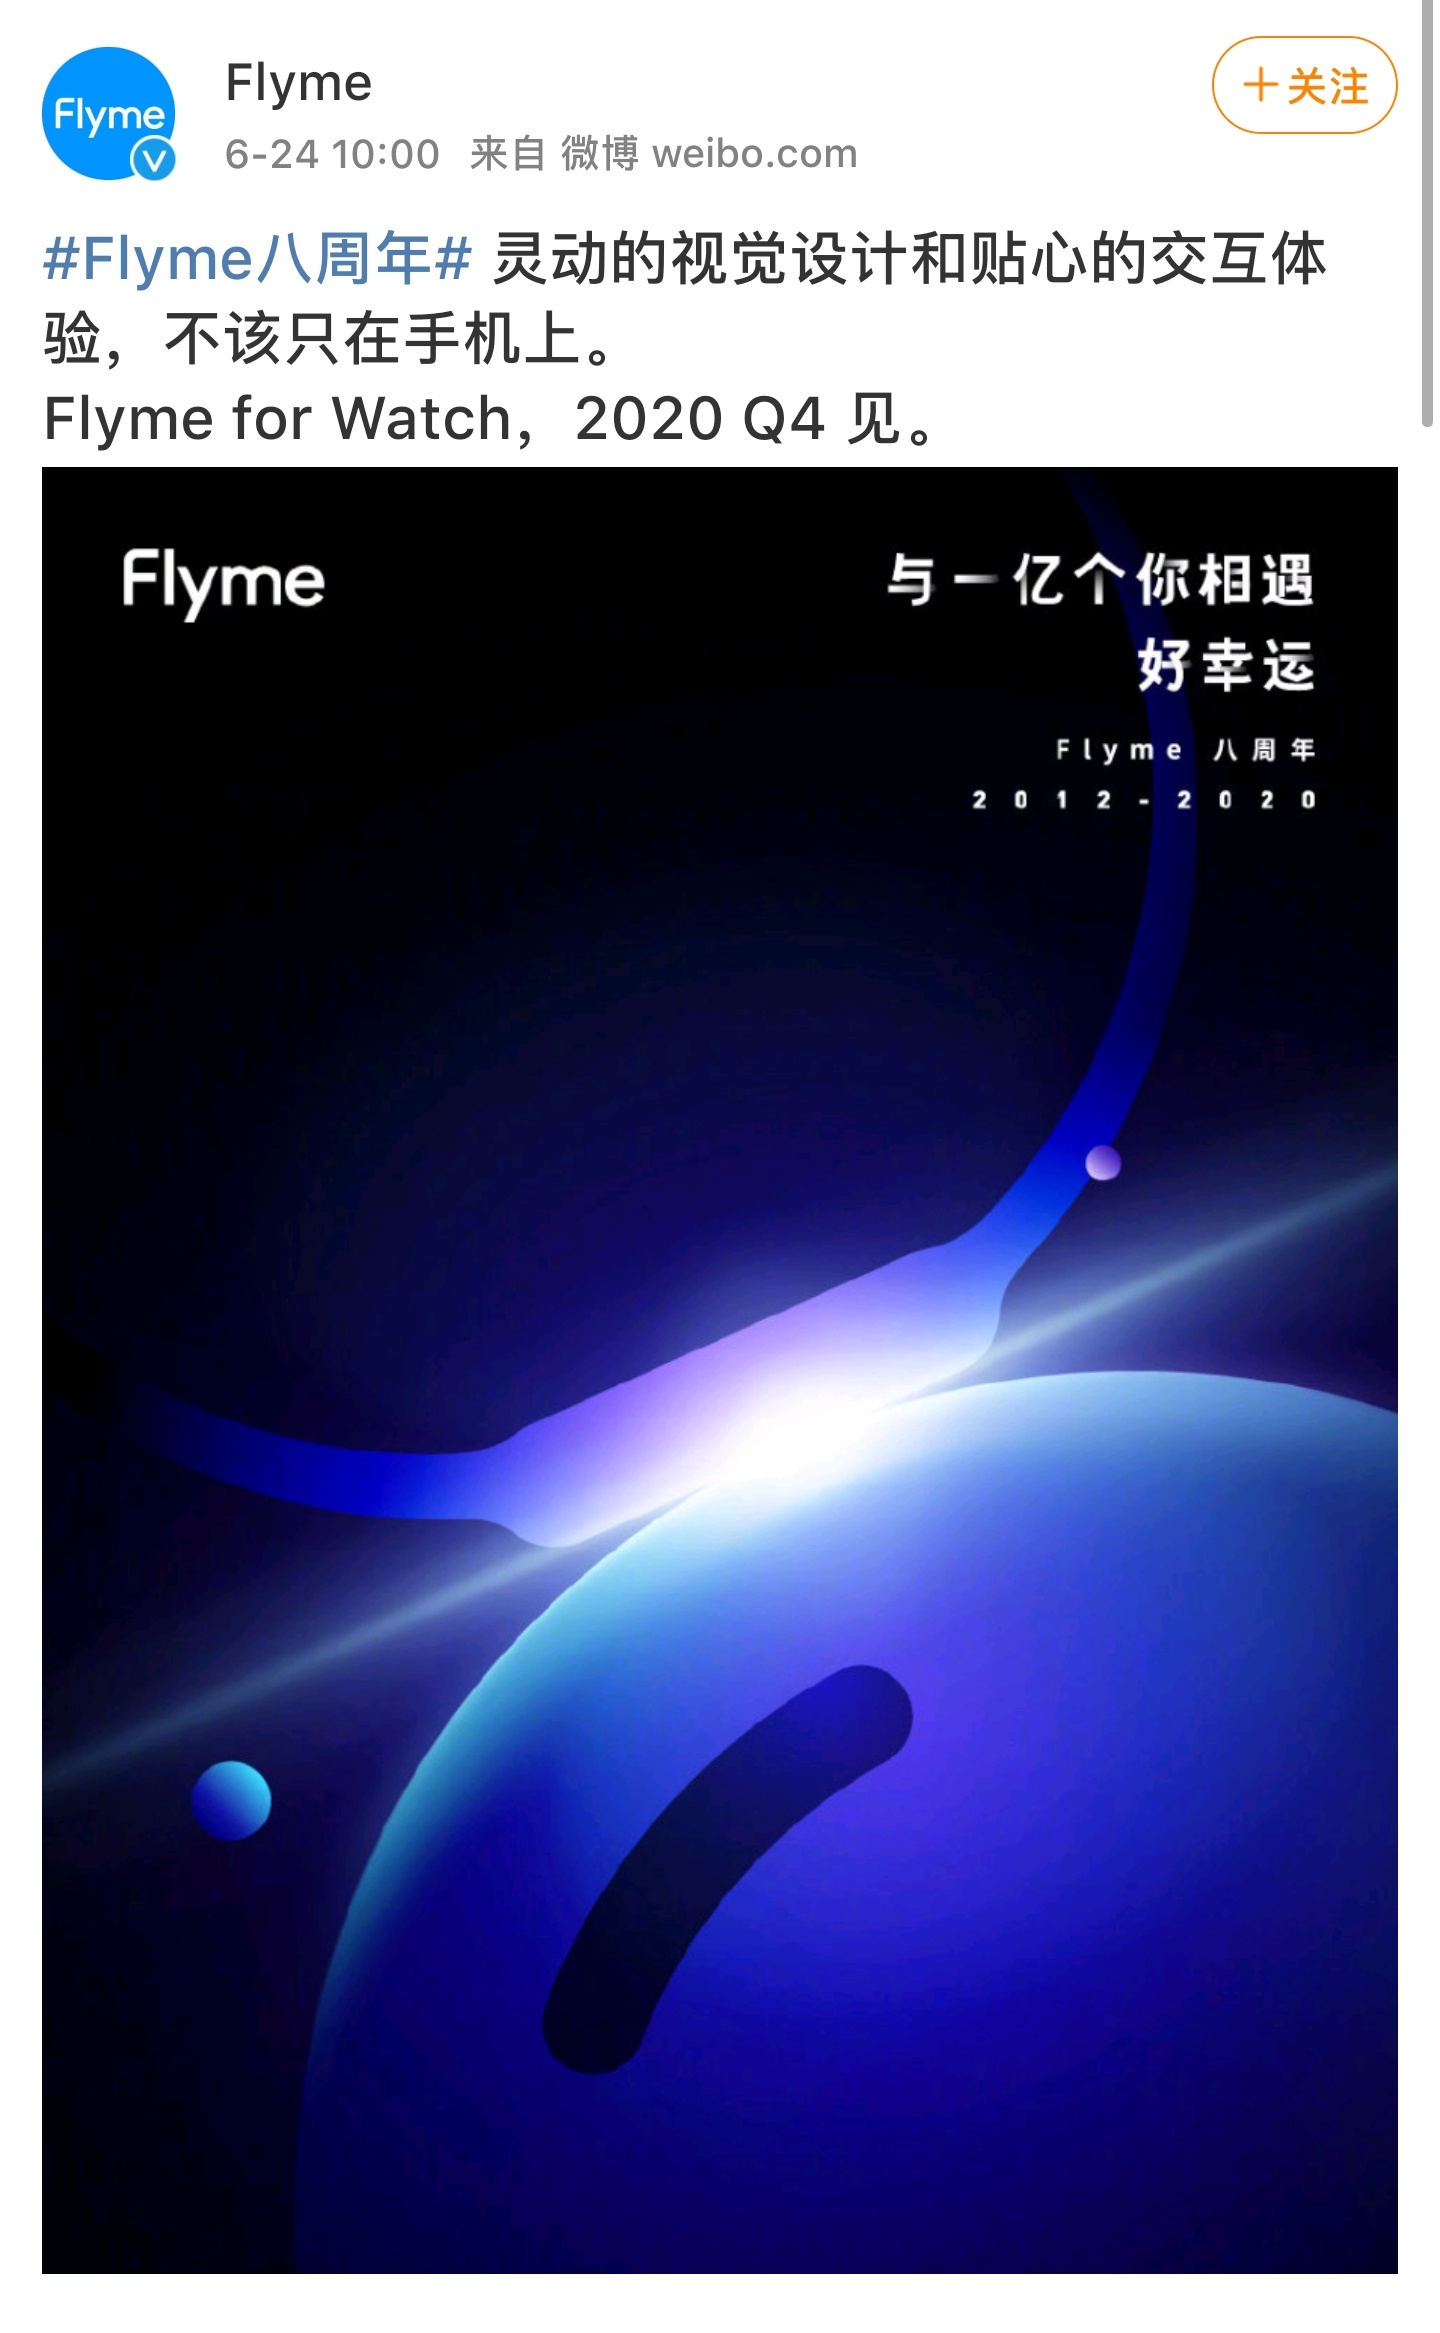 魅族Flyme 8.1稳定版正式发布：小窗模式2.1、游戏振感3.0-魅族,Flyme 8.1 ——快科技(驱动之家旗下媒体)--科技改变未来